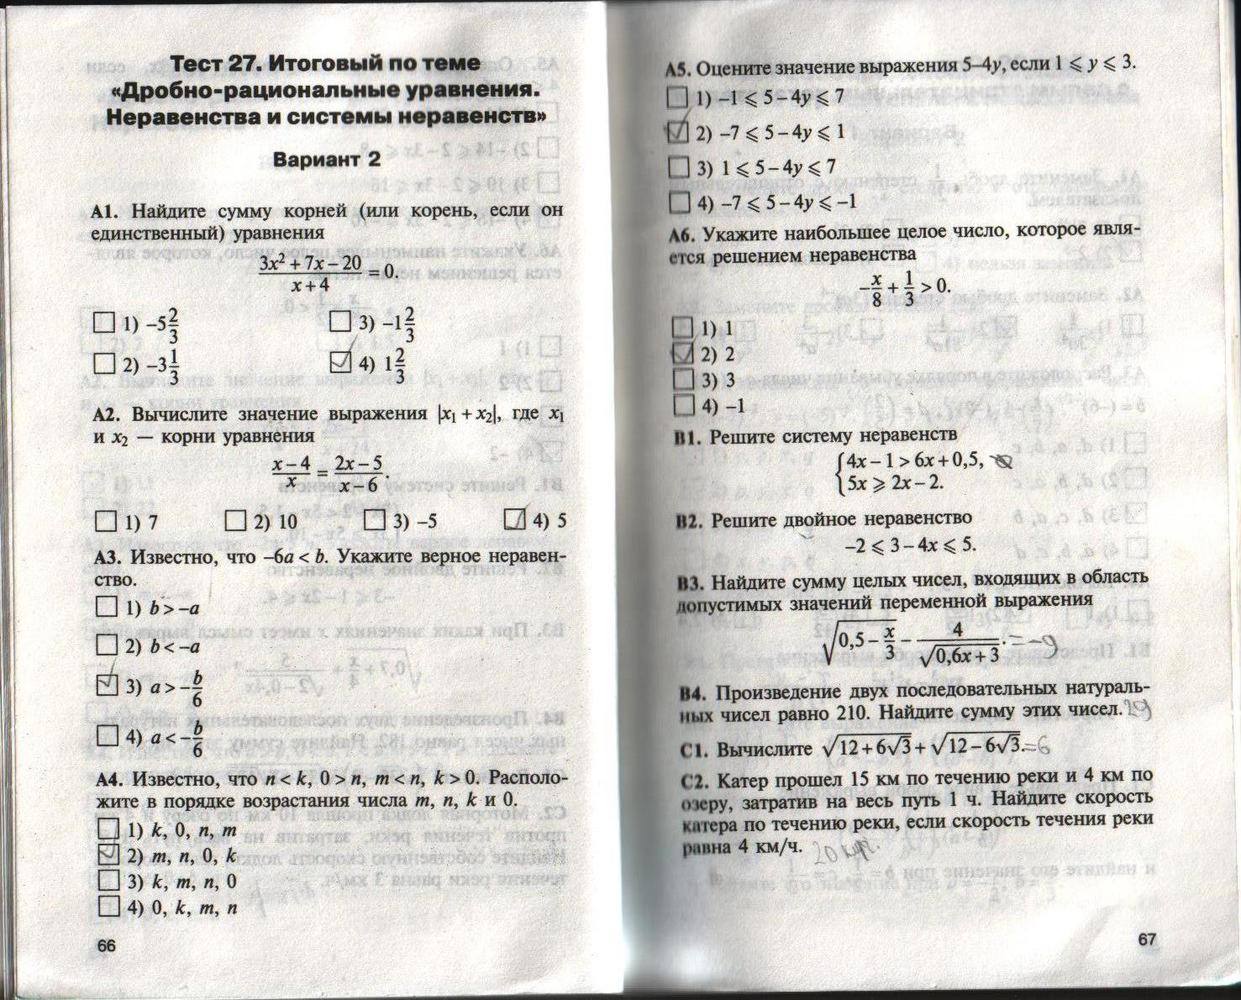 Контрольно-измерительные материалы, 8 класс, Черноруцкий В.В., 2012, задание: стр. 66-67